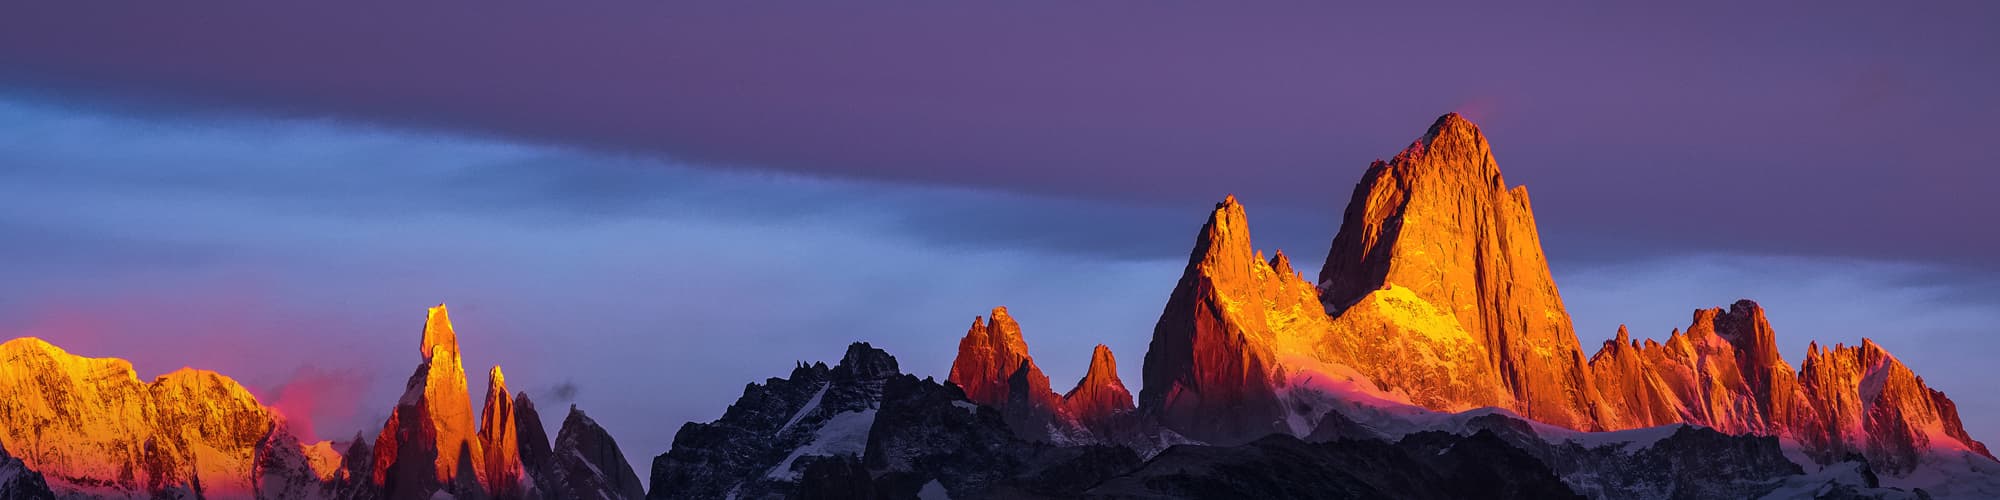 Voyage sur mesure Patagonie argentine © Mweber67 / Adobe Stock